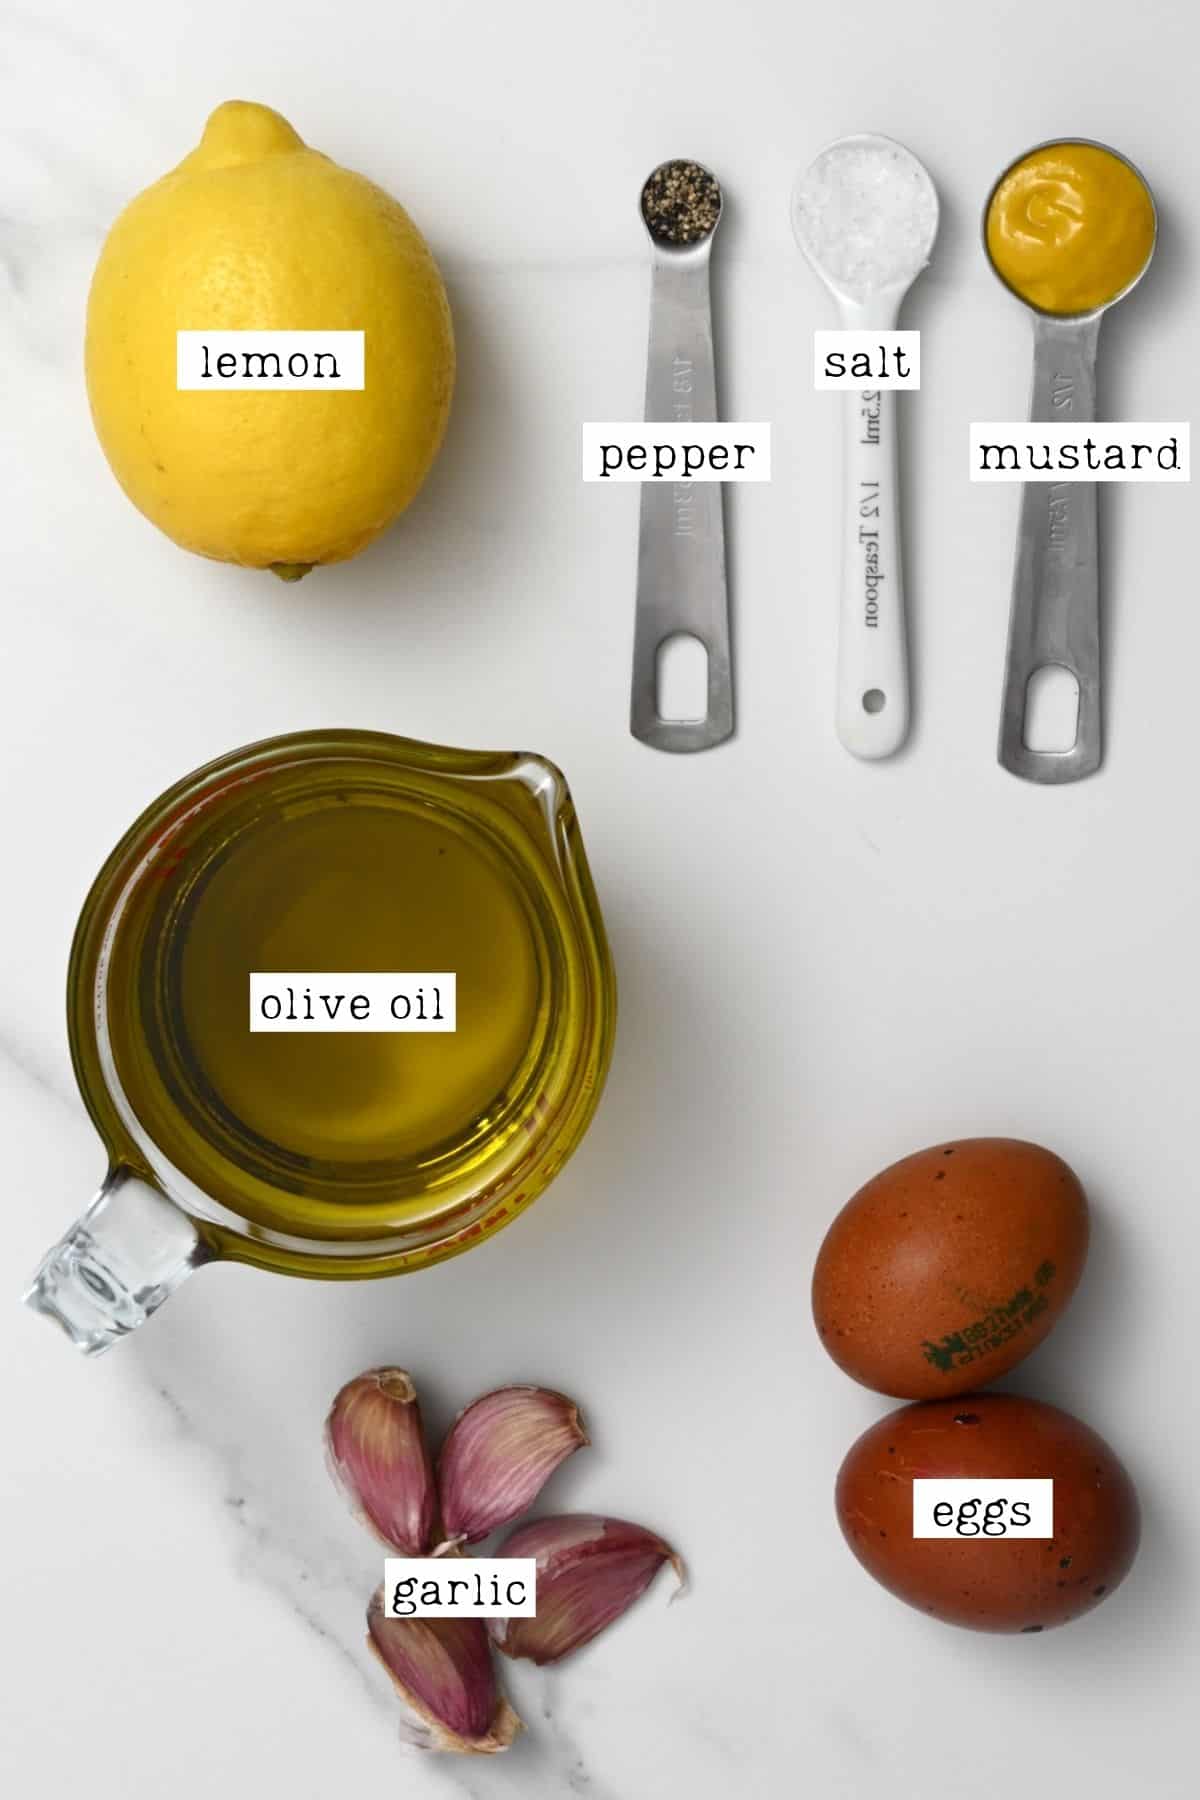 Ingredients for garlic mayo